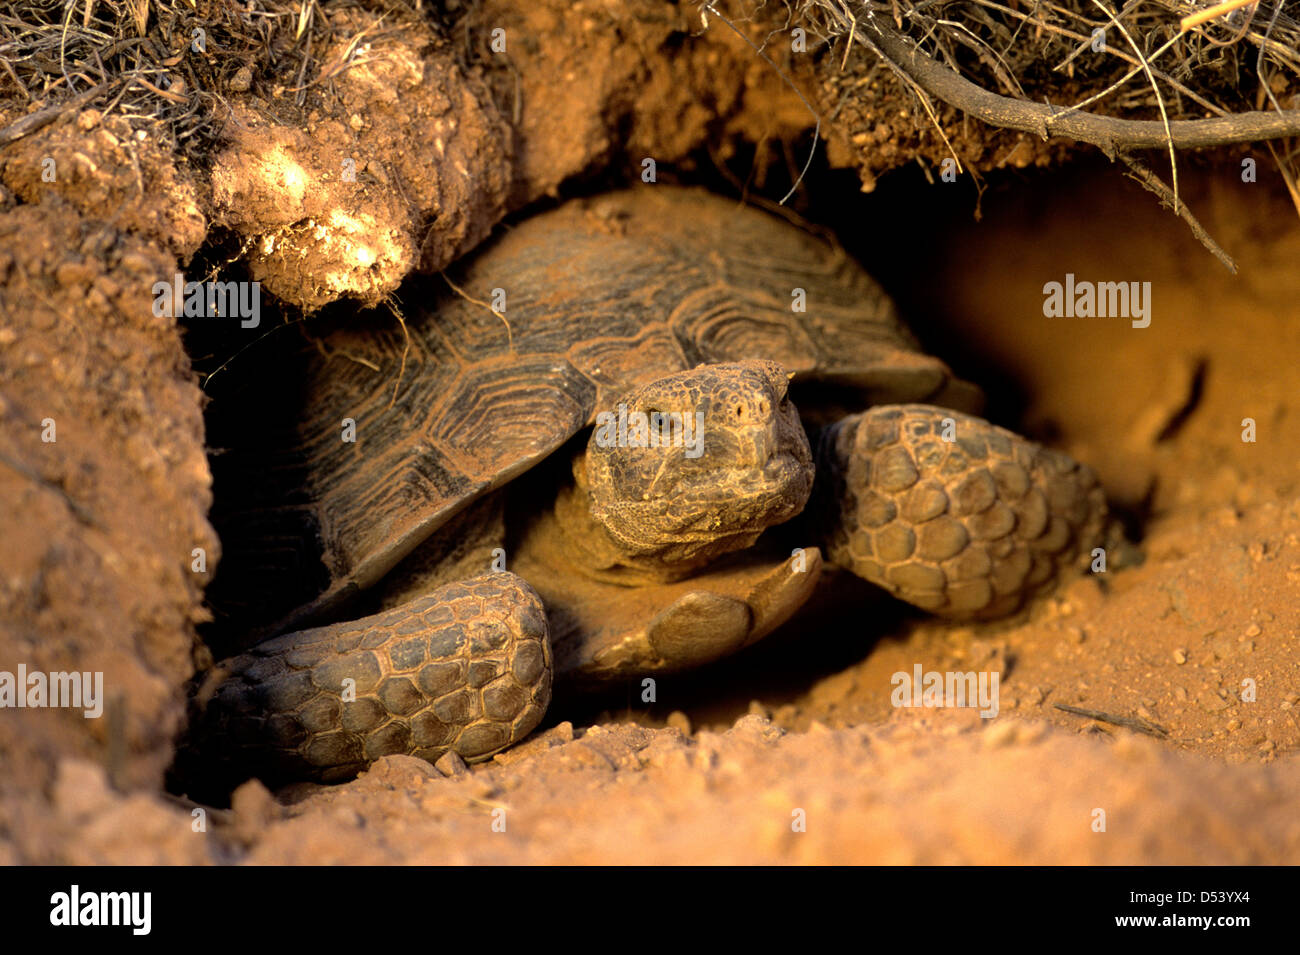 Desert tortoise in the Red Cliffs Desert Reserve near St. George, Utah, USA Stock Photo